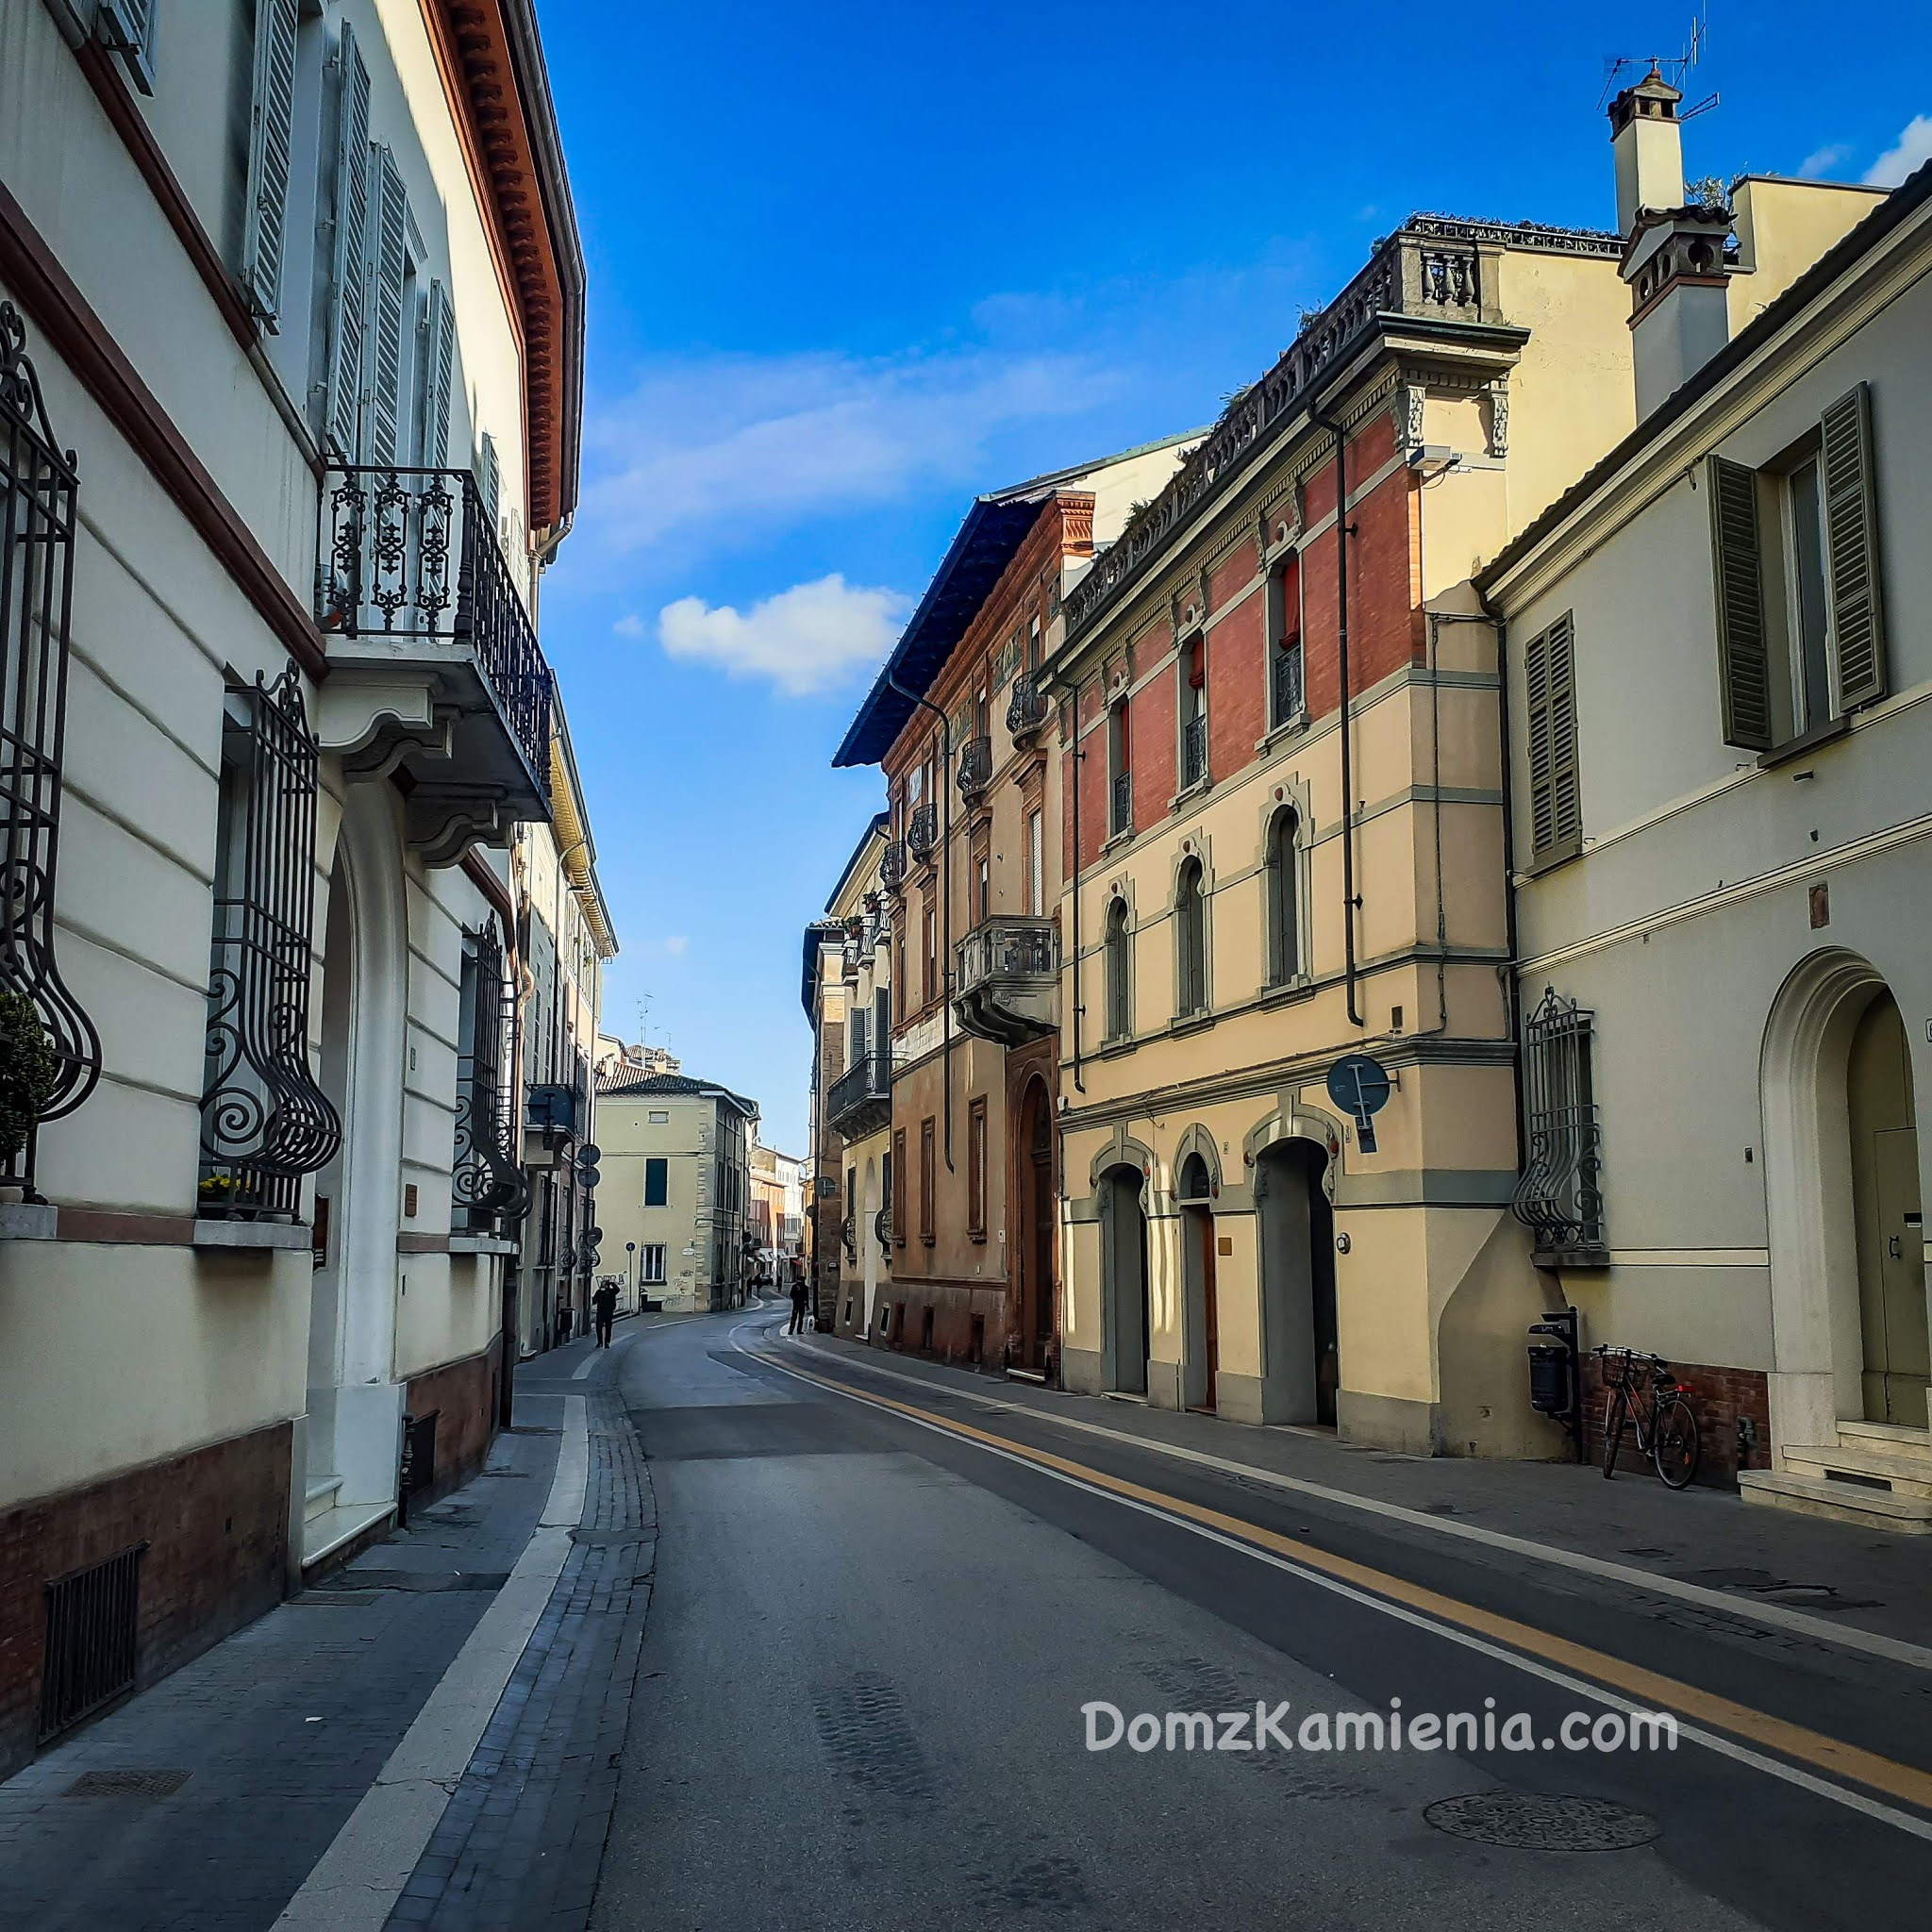 Faenza Dom z Kamienia, blog o życiu w Toskanii